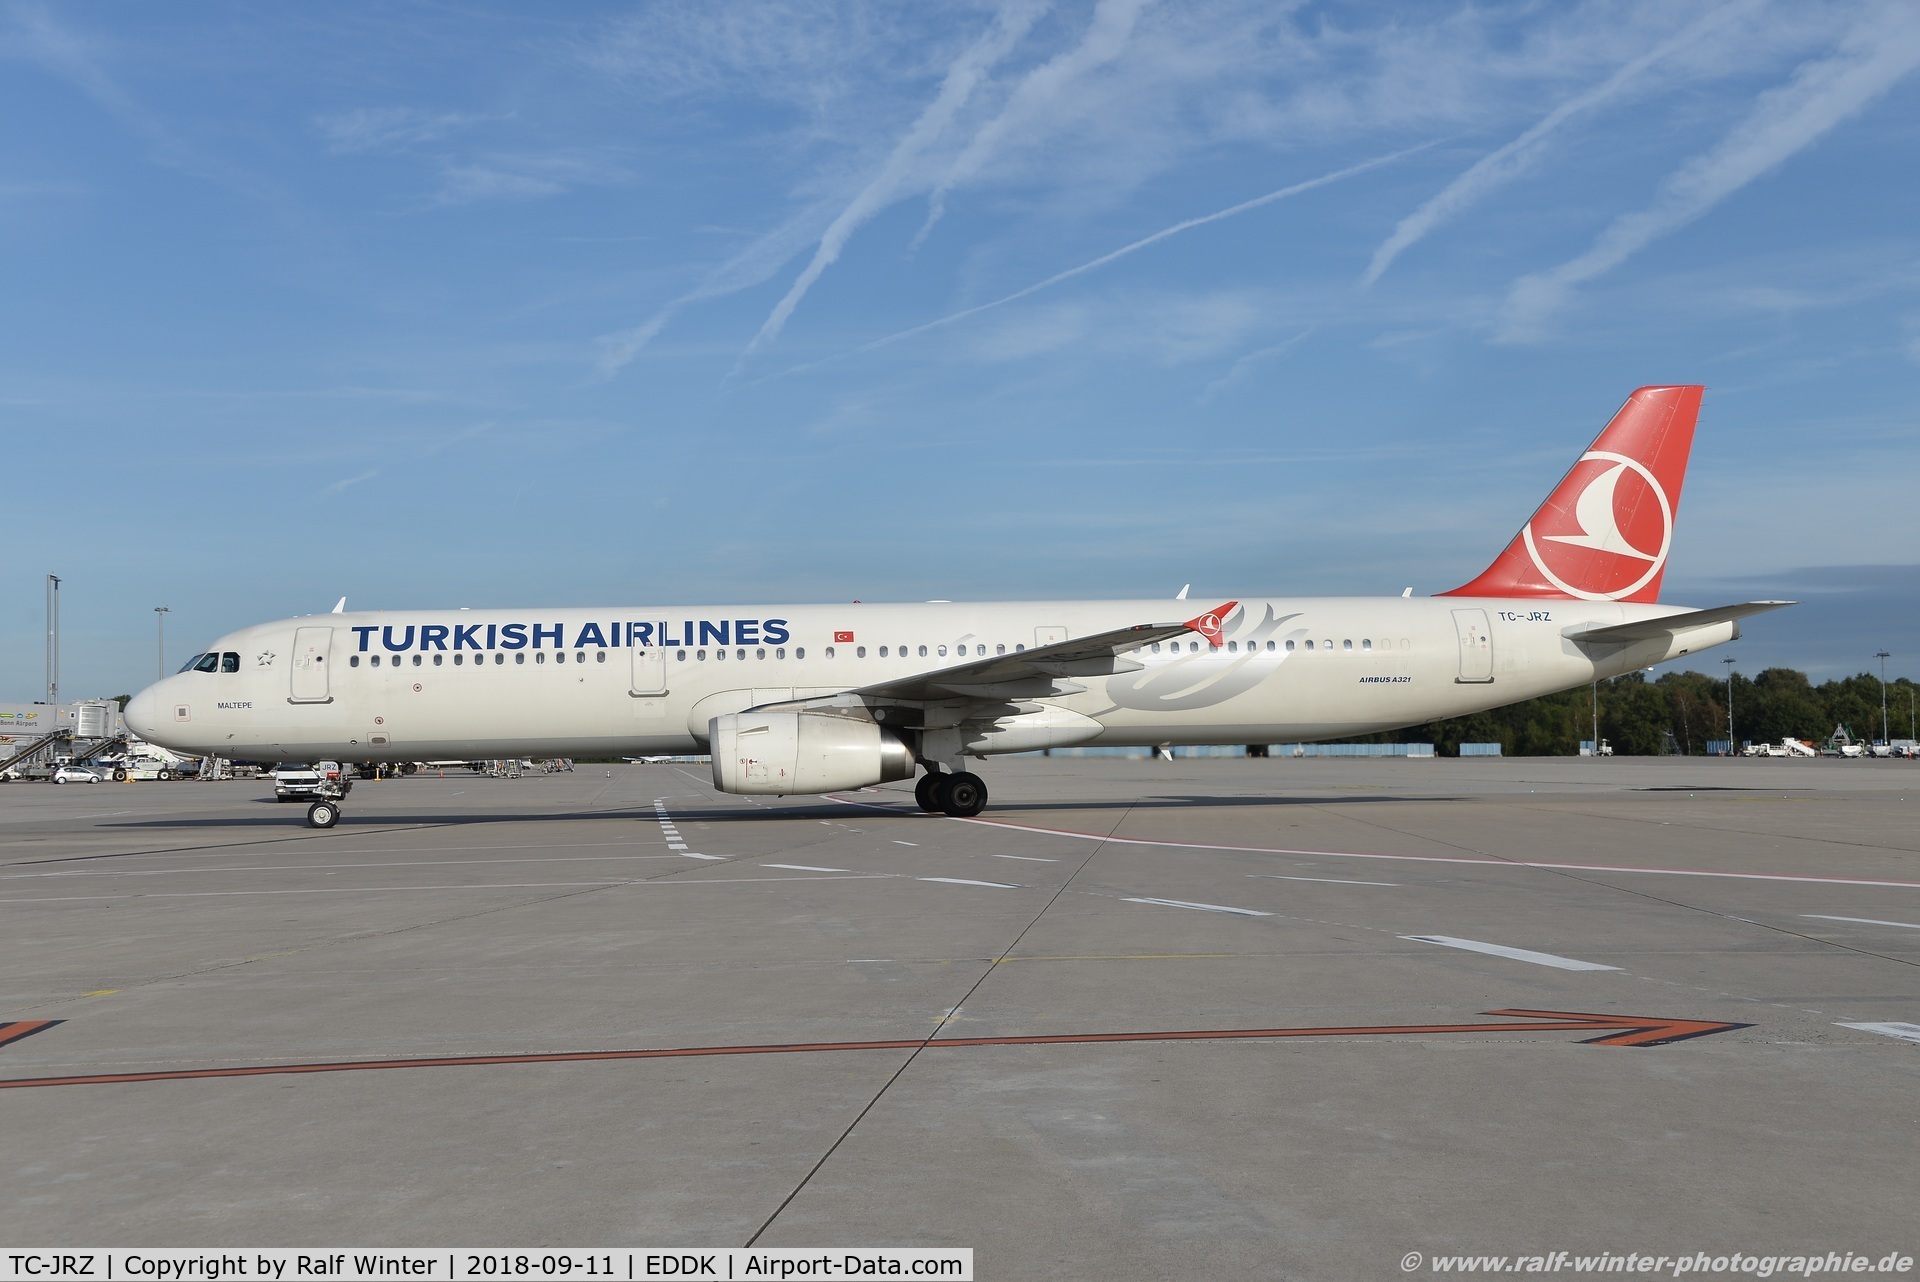 TC-JRZ, 2012 Airbus A321-231 C/N 5118, Airbus A321-231 - TK THY THY Turkish Airlines 'Maltepe' - 5118 - TC-JRZ - 11.09.2018 - CGN